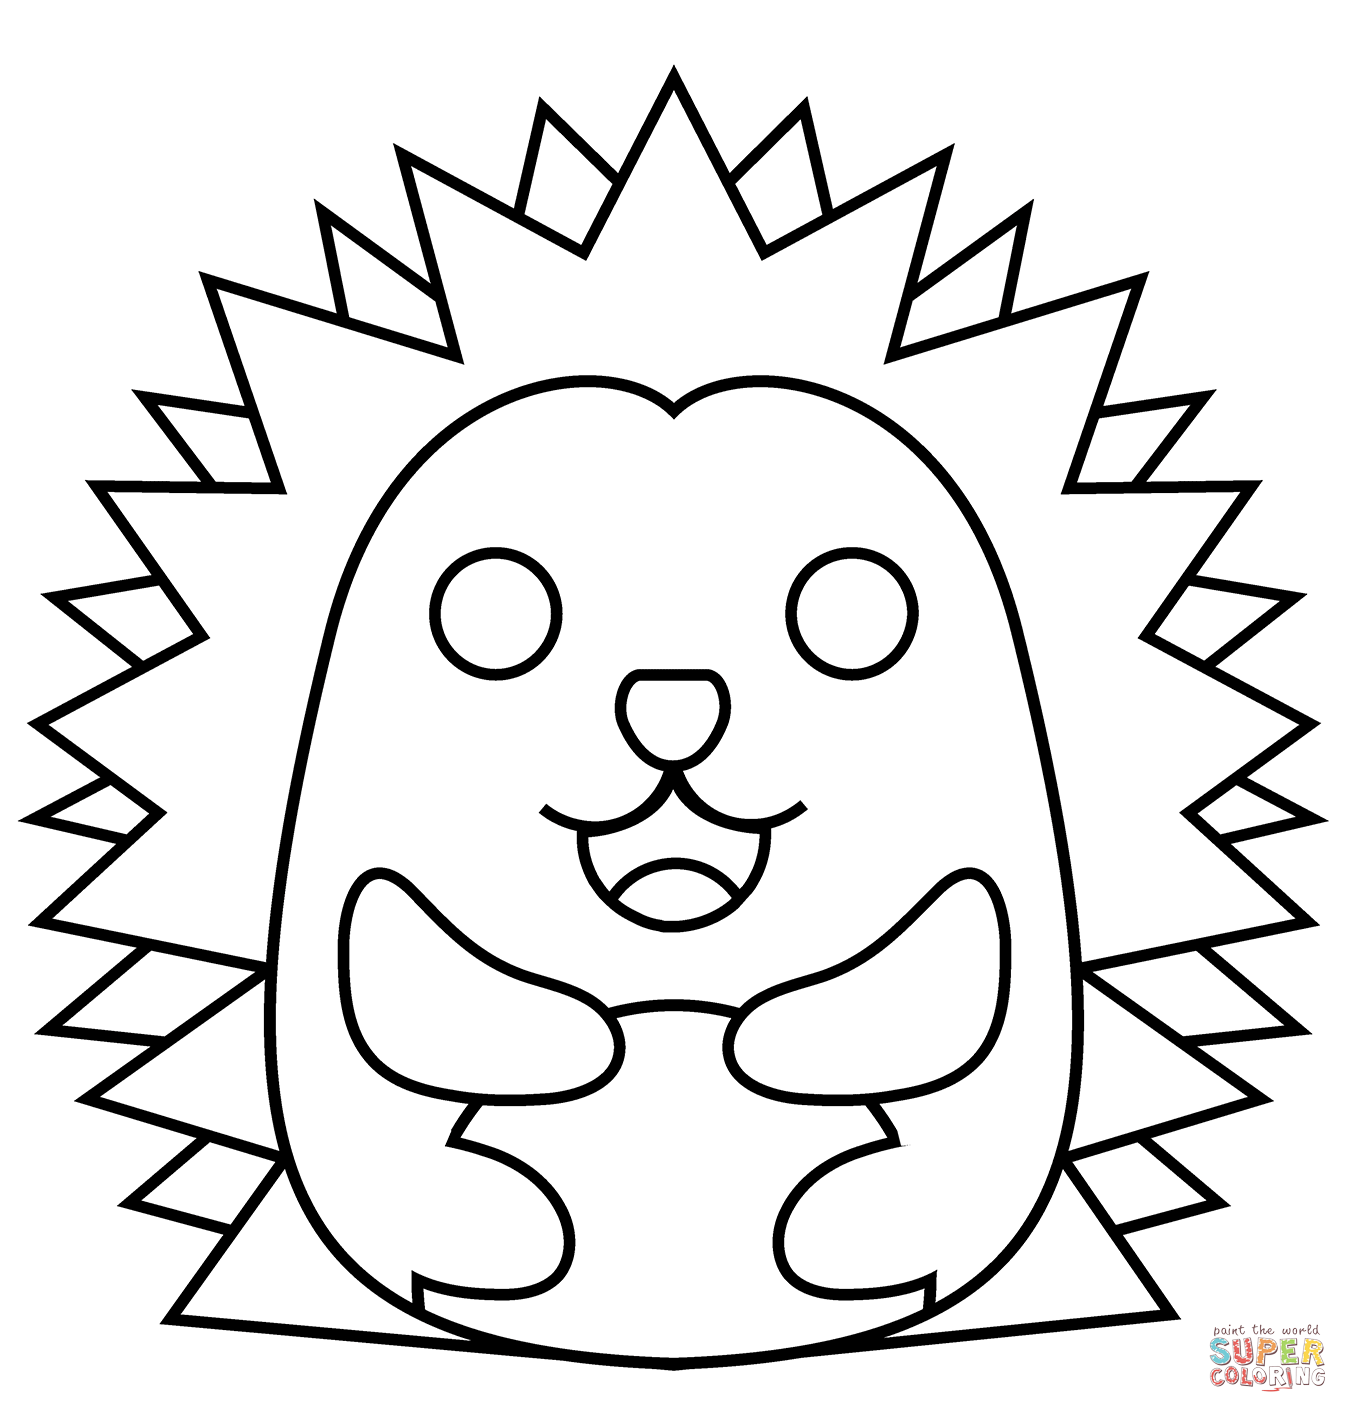 Hedgehog emoji coloring page free printable coloring pages